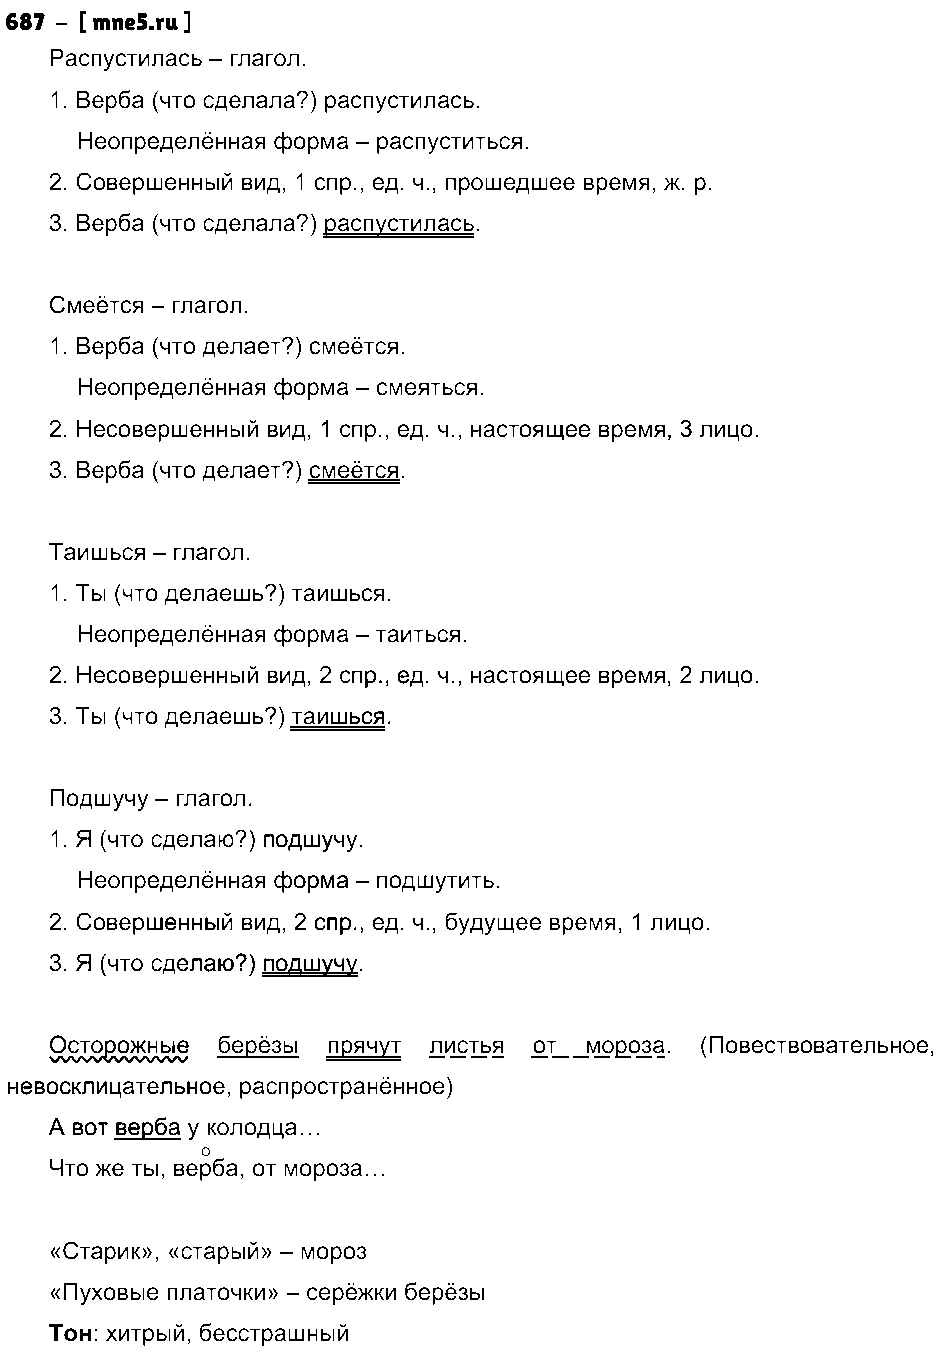 ГДЗ Русский язык 5 класс - 687